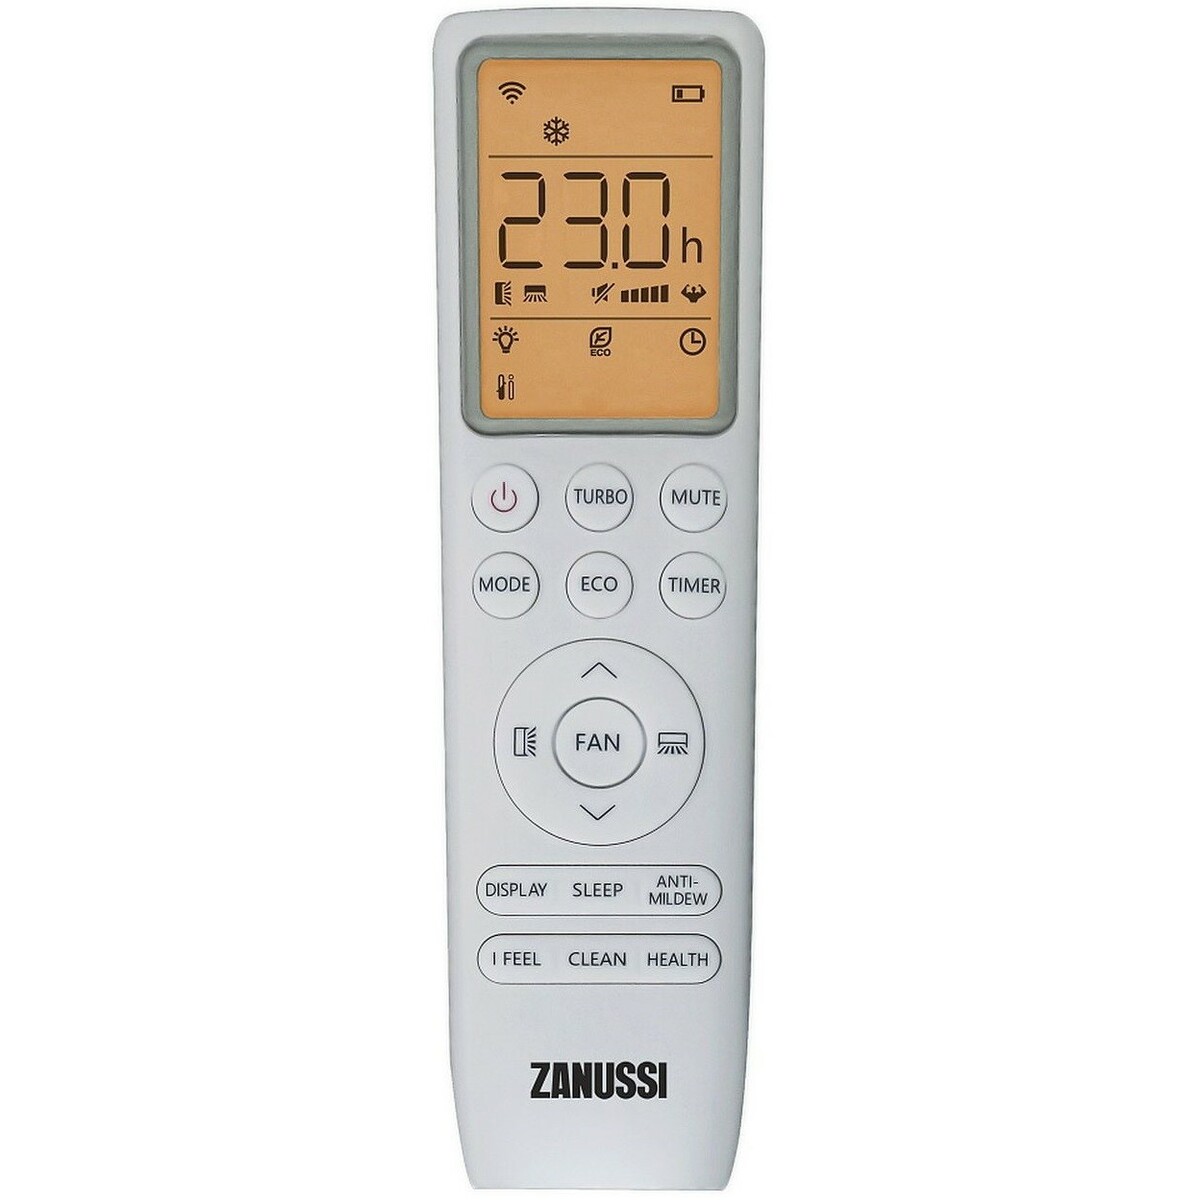 Сплит-система Zanussi ZACS-24 HB/A23/N1, белый